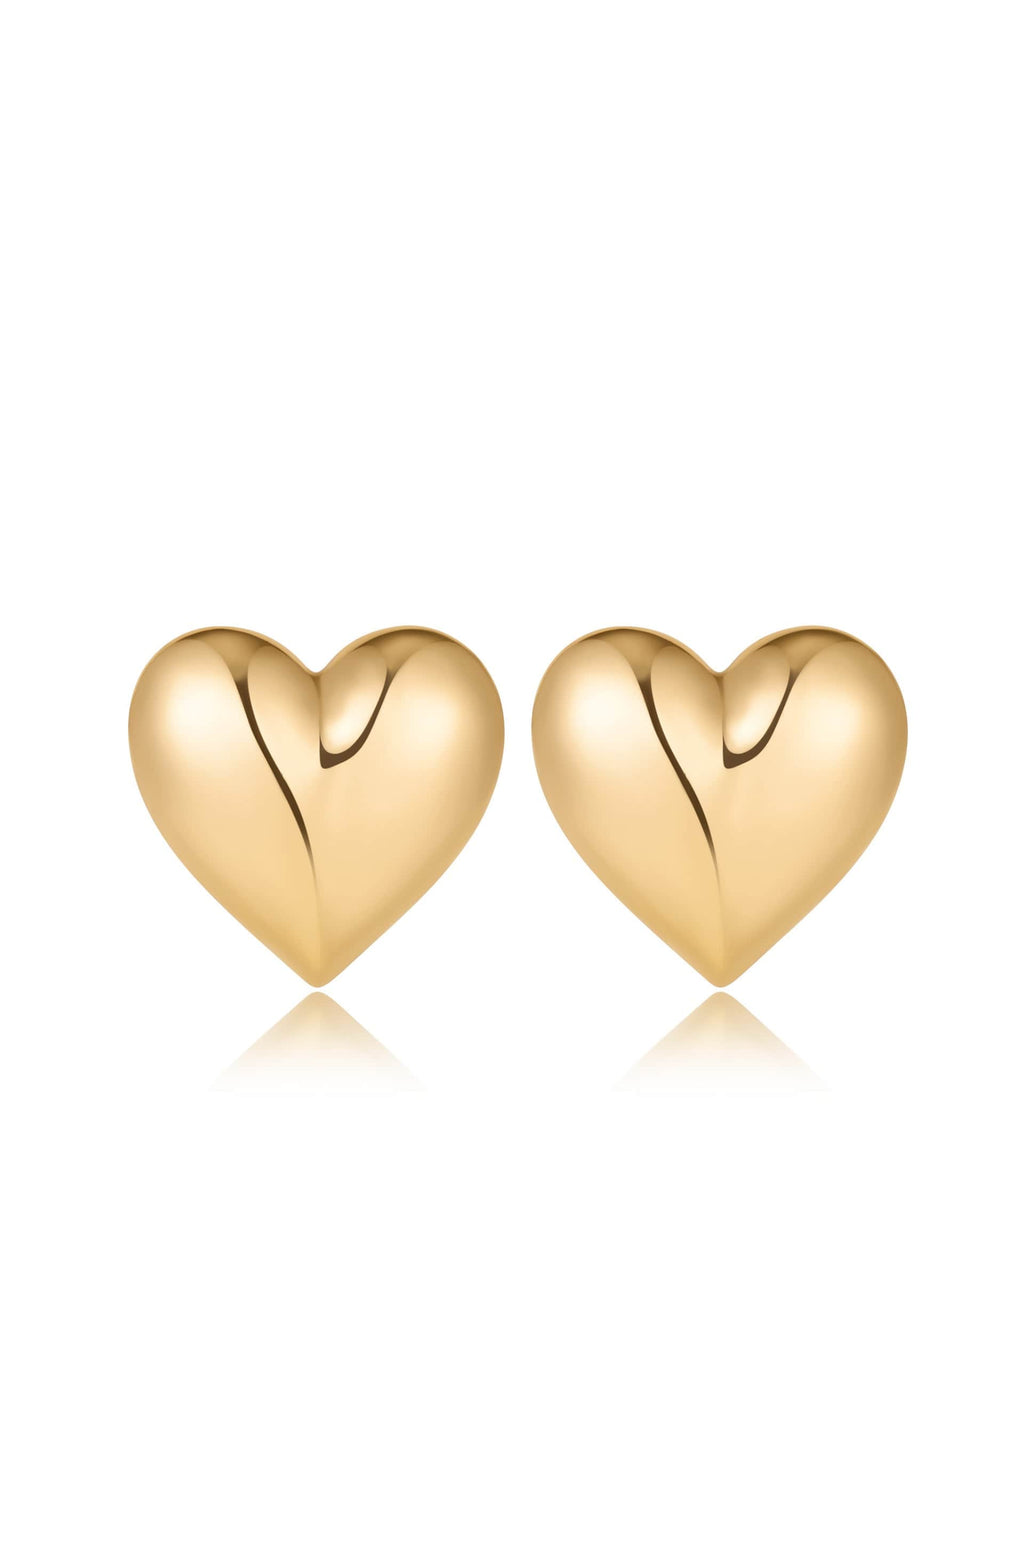 Ettika Earrings 18k Gold Plated / One Size 18k Gold Plated Heart Stud Earrings